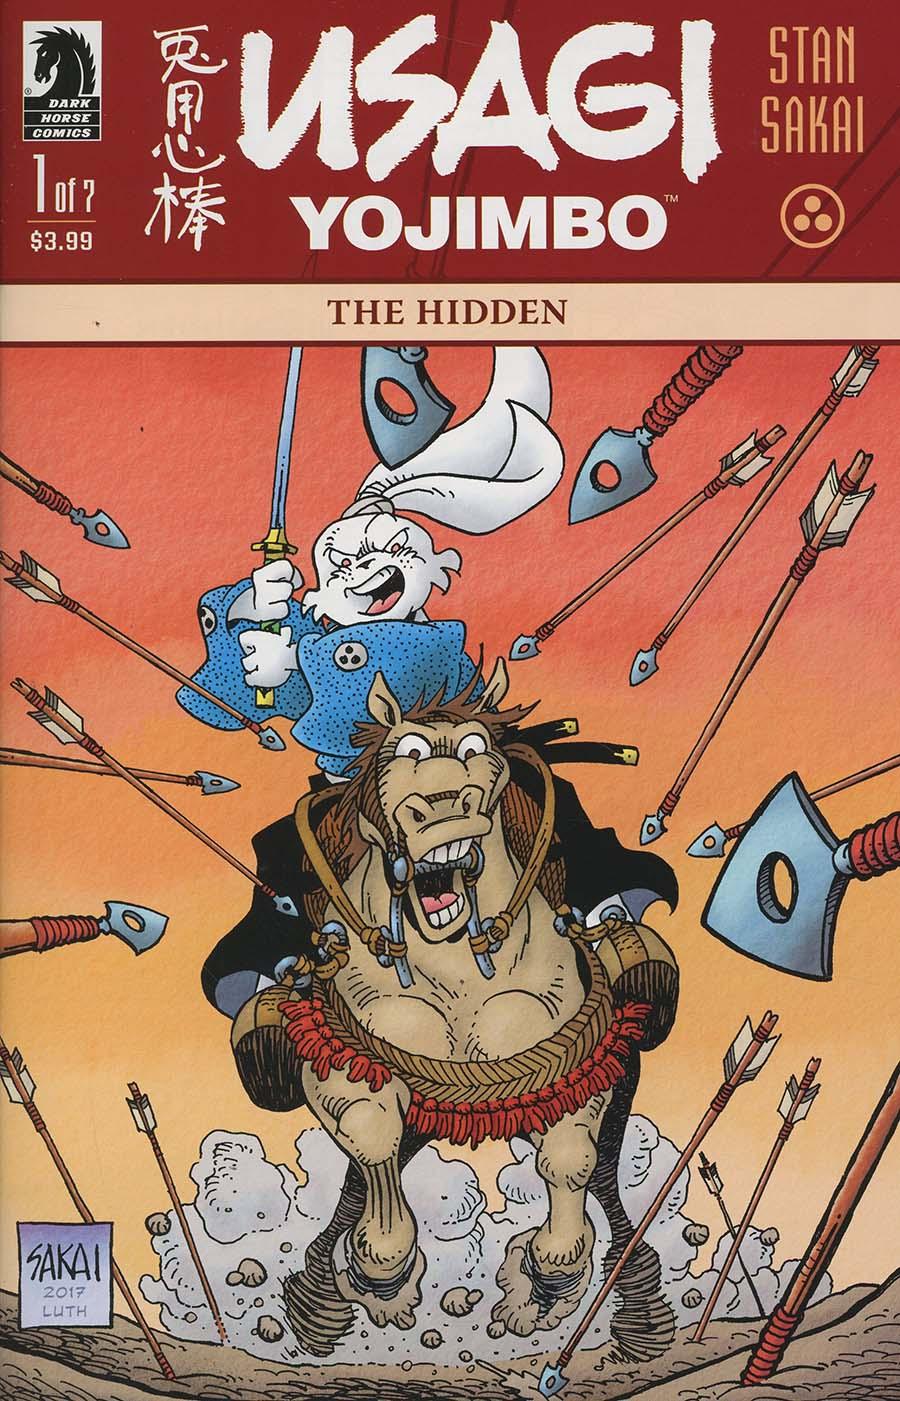 Usagi Yojimbo The Hidden Vol. 1 #1